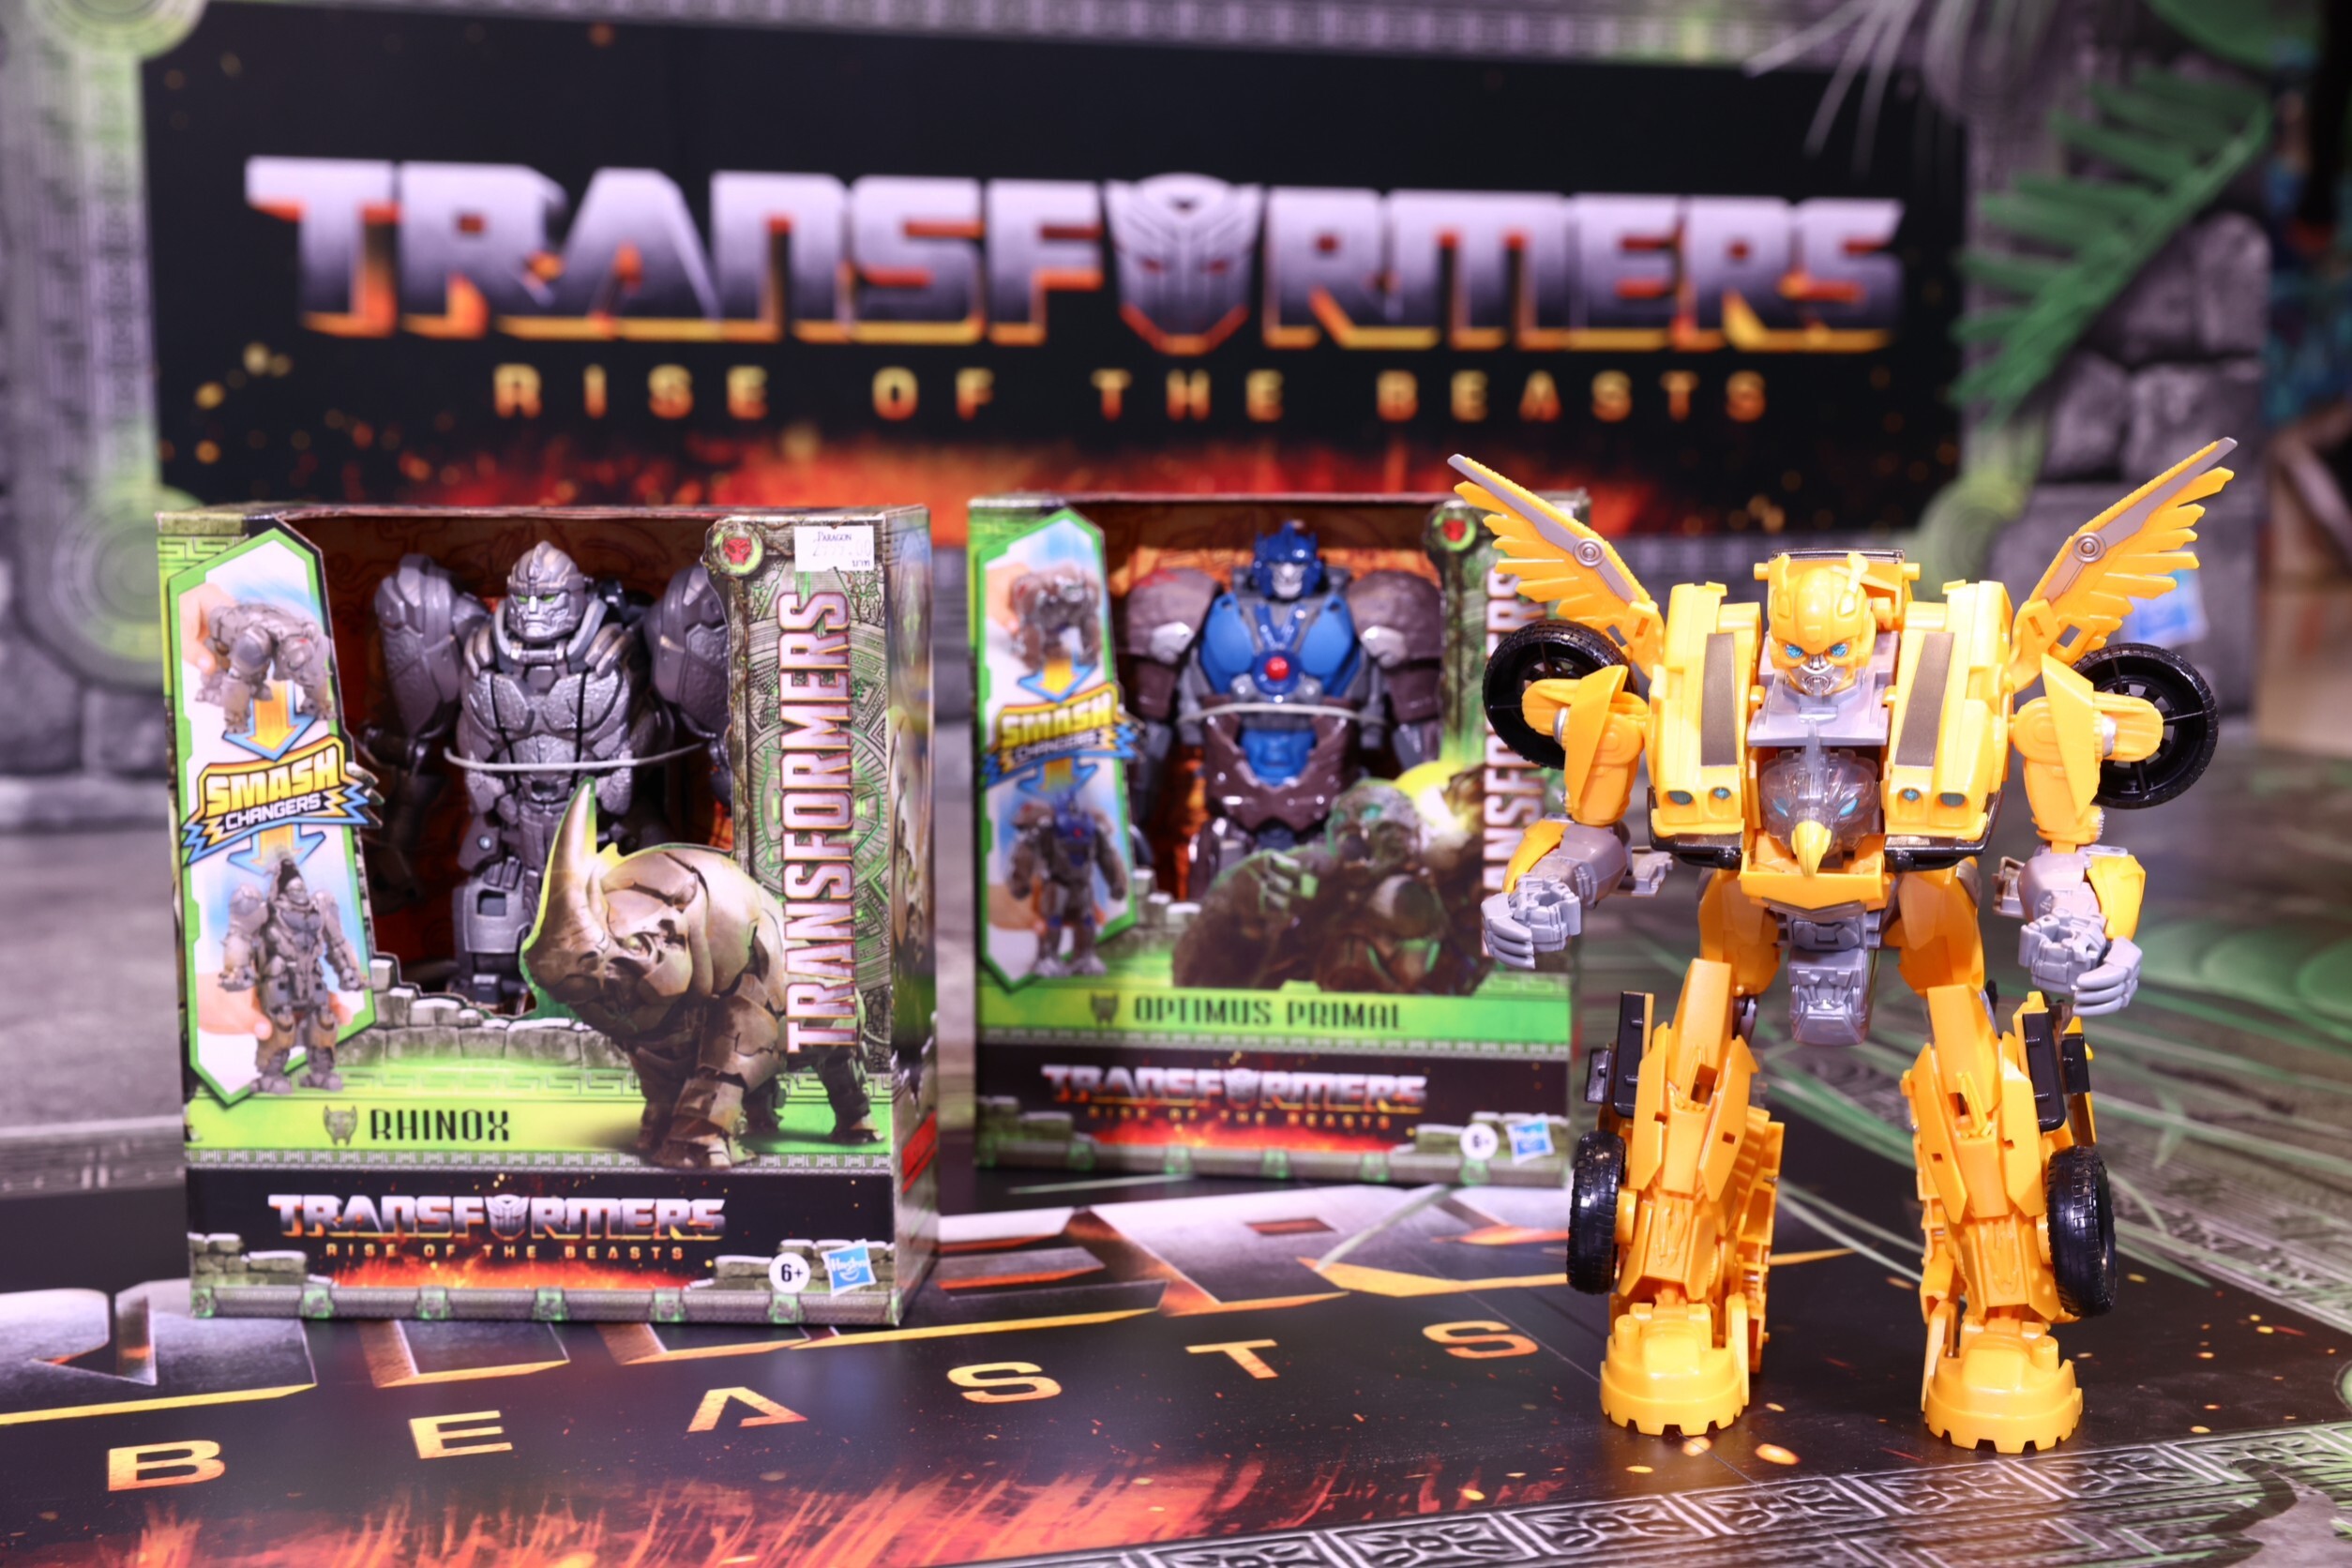 แมพ แอคทีฟ ร่วมกับ ฮาสโบร ปลุกกระแสตลาดคาแรคเตอร์หนังดังระดับโลก จัดงานเปิดตัวของเล่น-ฟิกเกอร์หุ่นแปลงร่าง Transformers :Rise Of The Beasts คาดกวาดยอดขายทั่วไทยกว่า 15 ล้านบาท